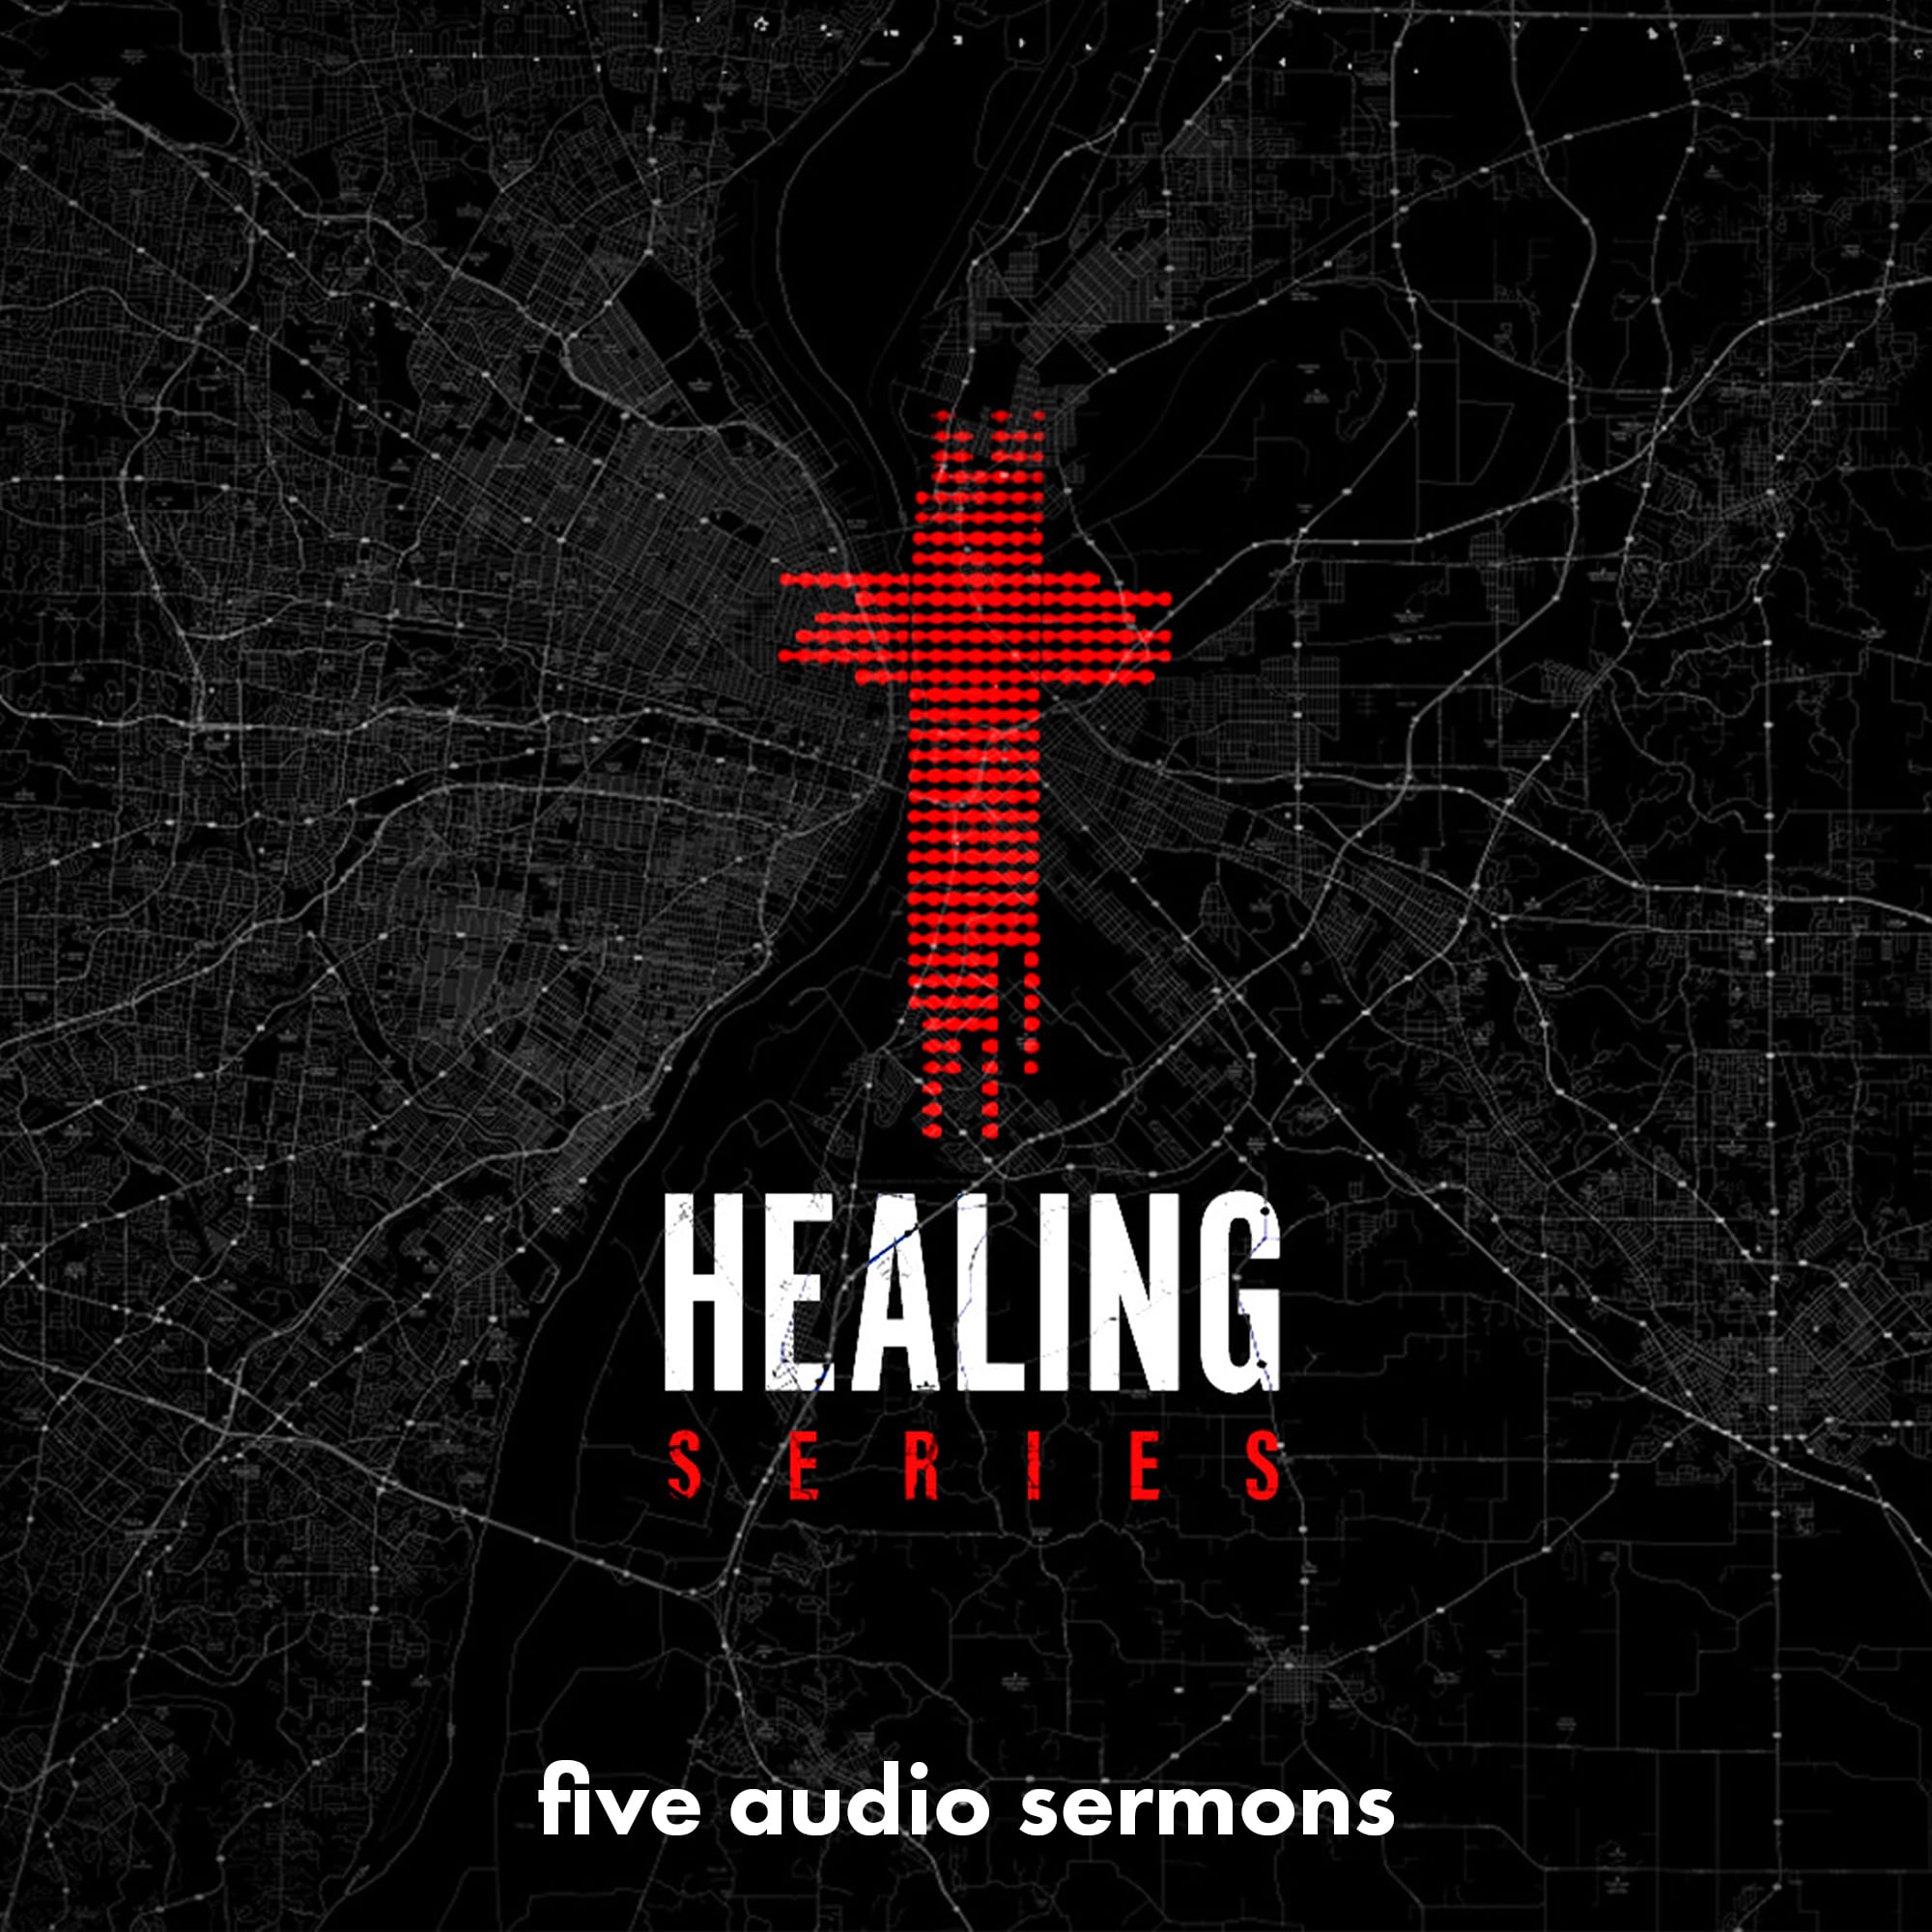 Series: Healing